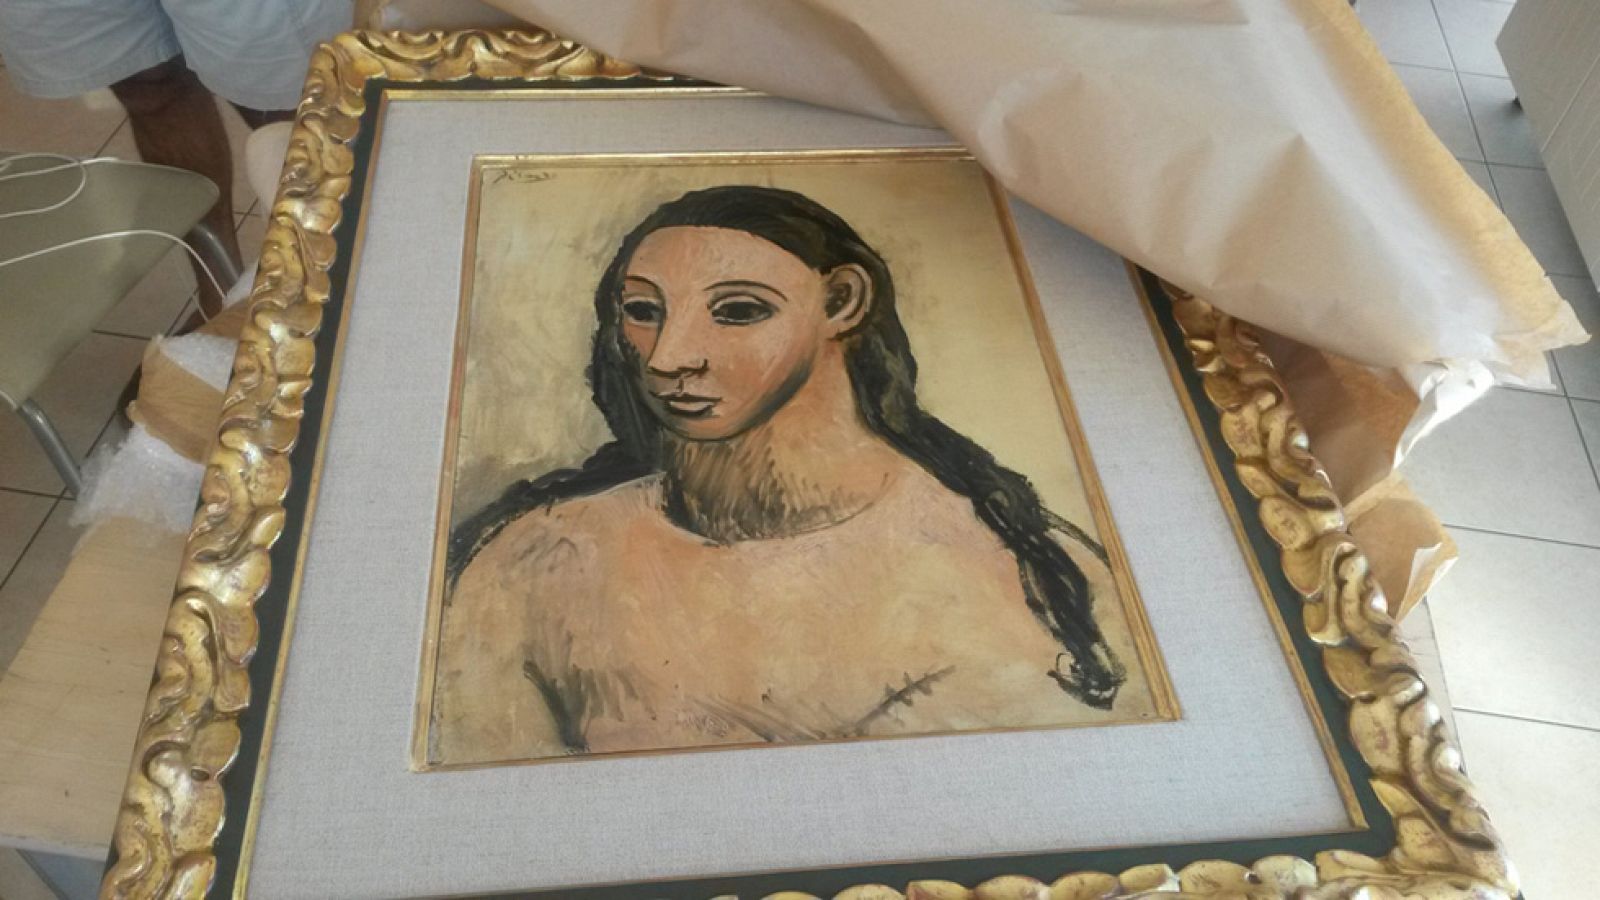 El cuadro de picasso 'Cabeza de mujer joven', valorado en 26 millones de euros